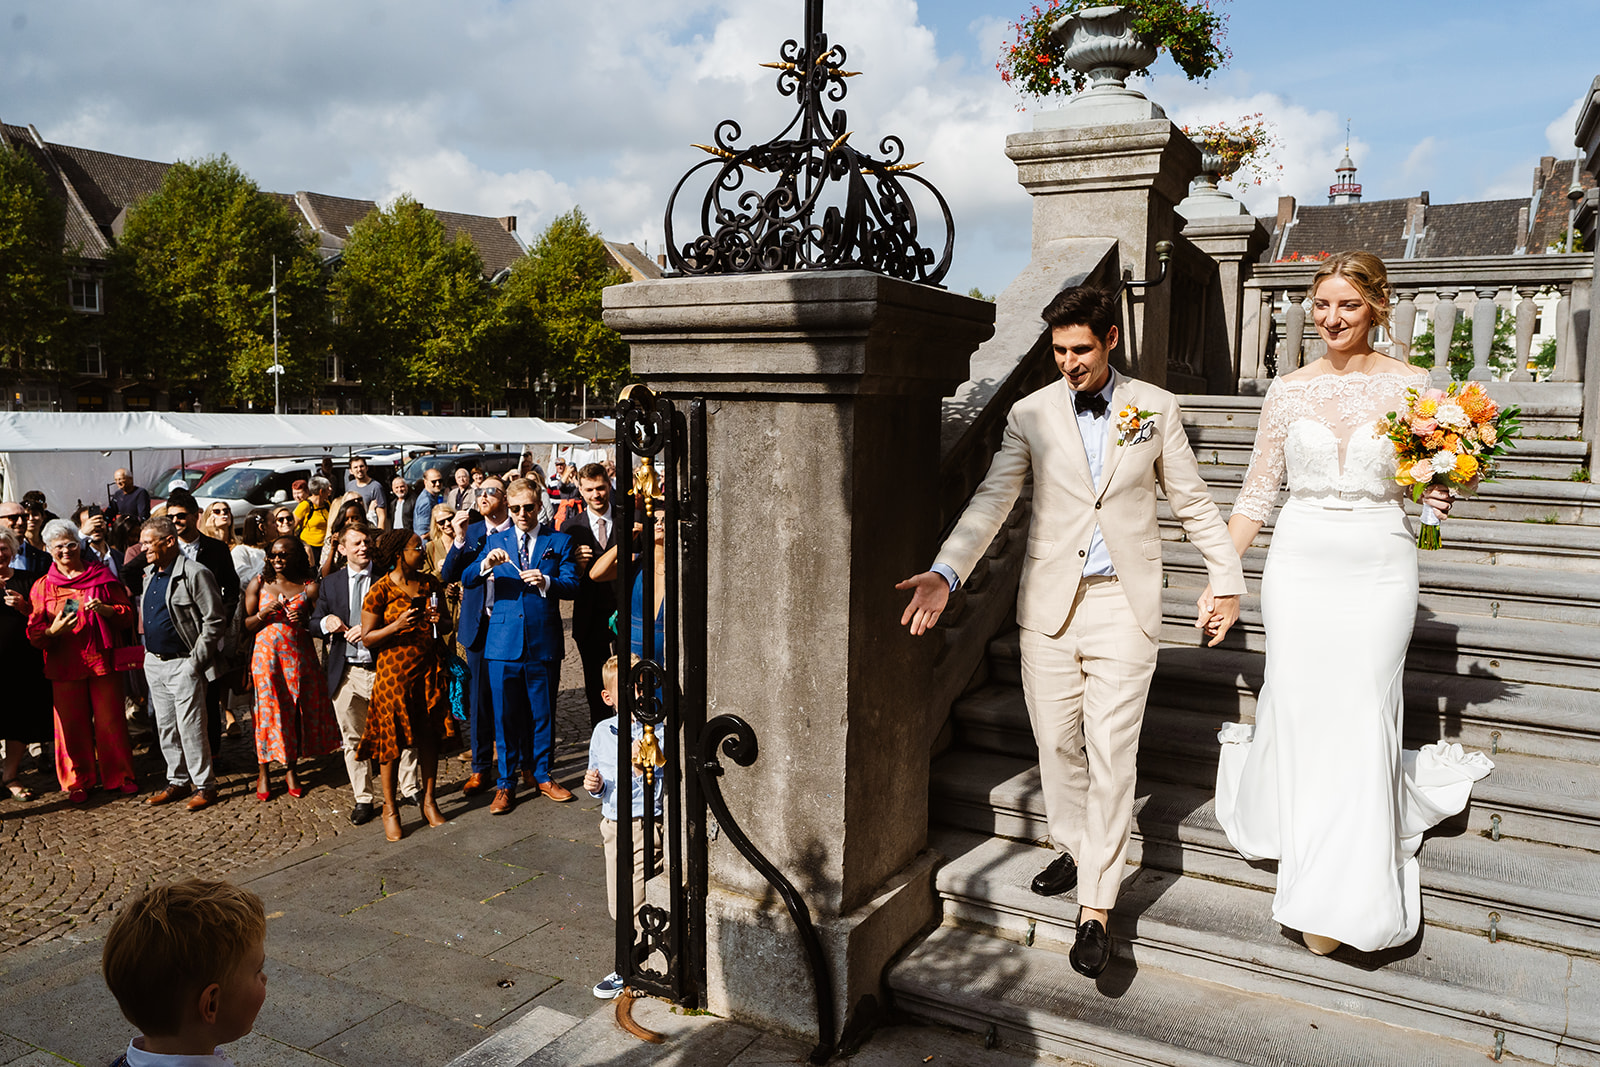 Bruidsfotograaf Maastricht - Bruidspaar loopt gasten tegemoet na de trouwceremonie